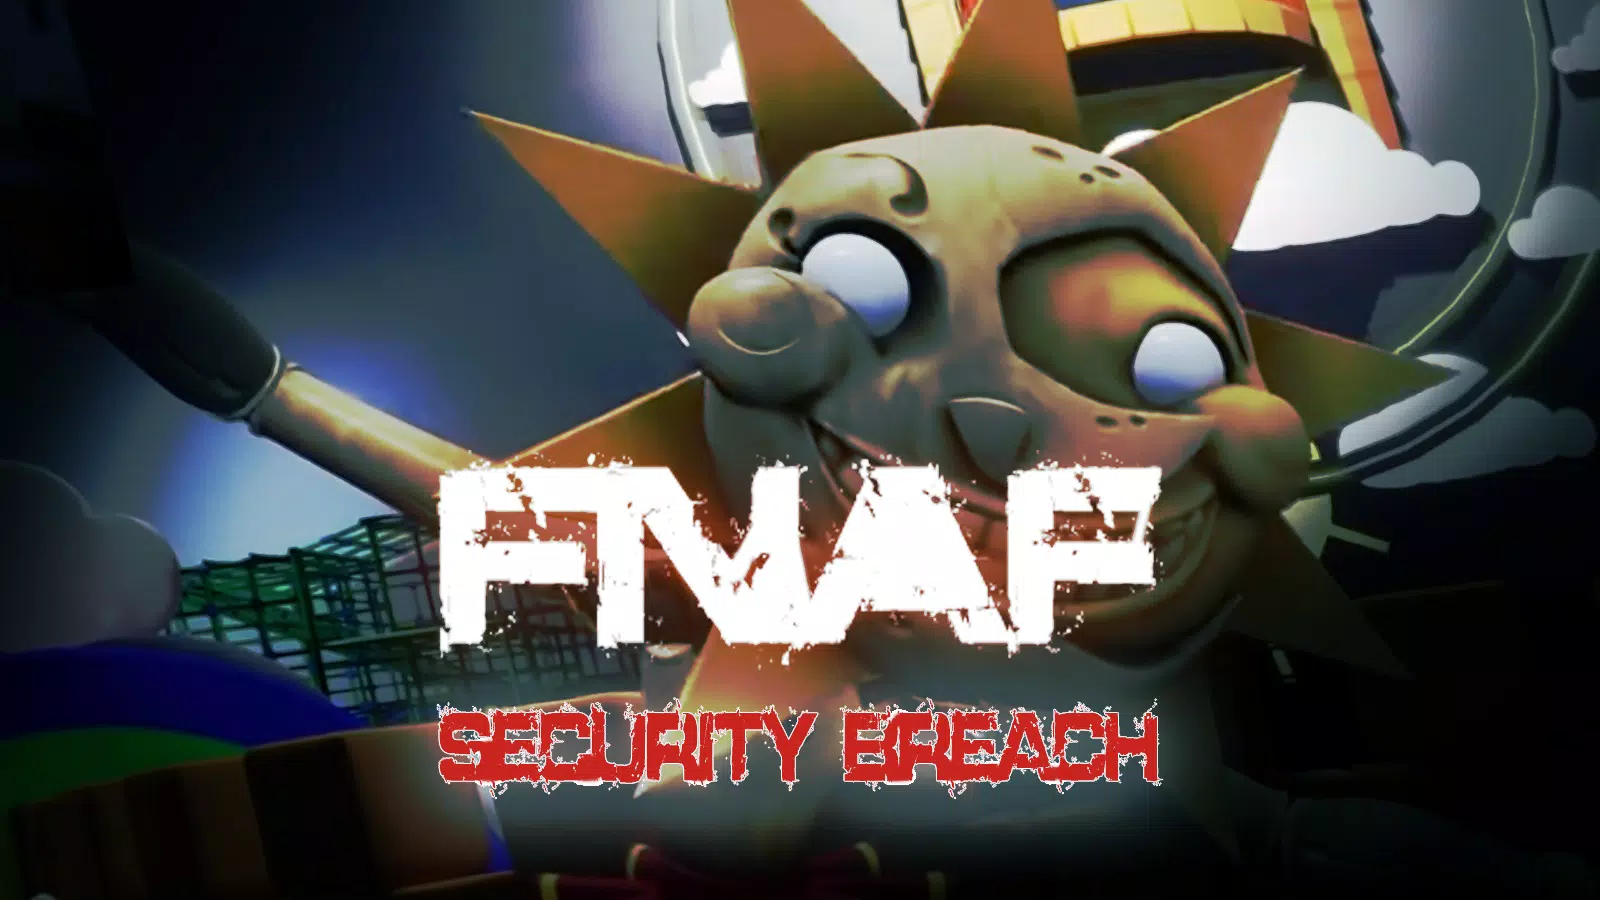 FNaF 9 - Security breach APK - FNaF 9 - Security breach 4 download.